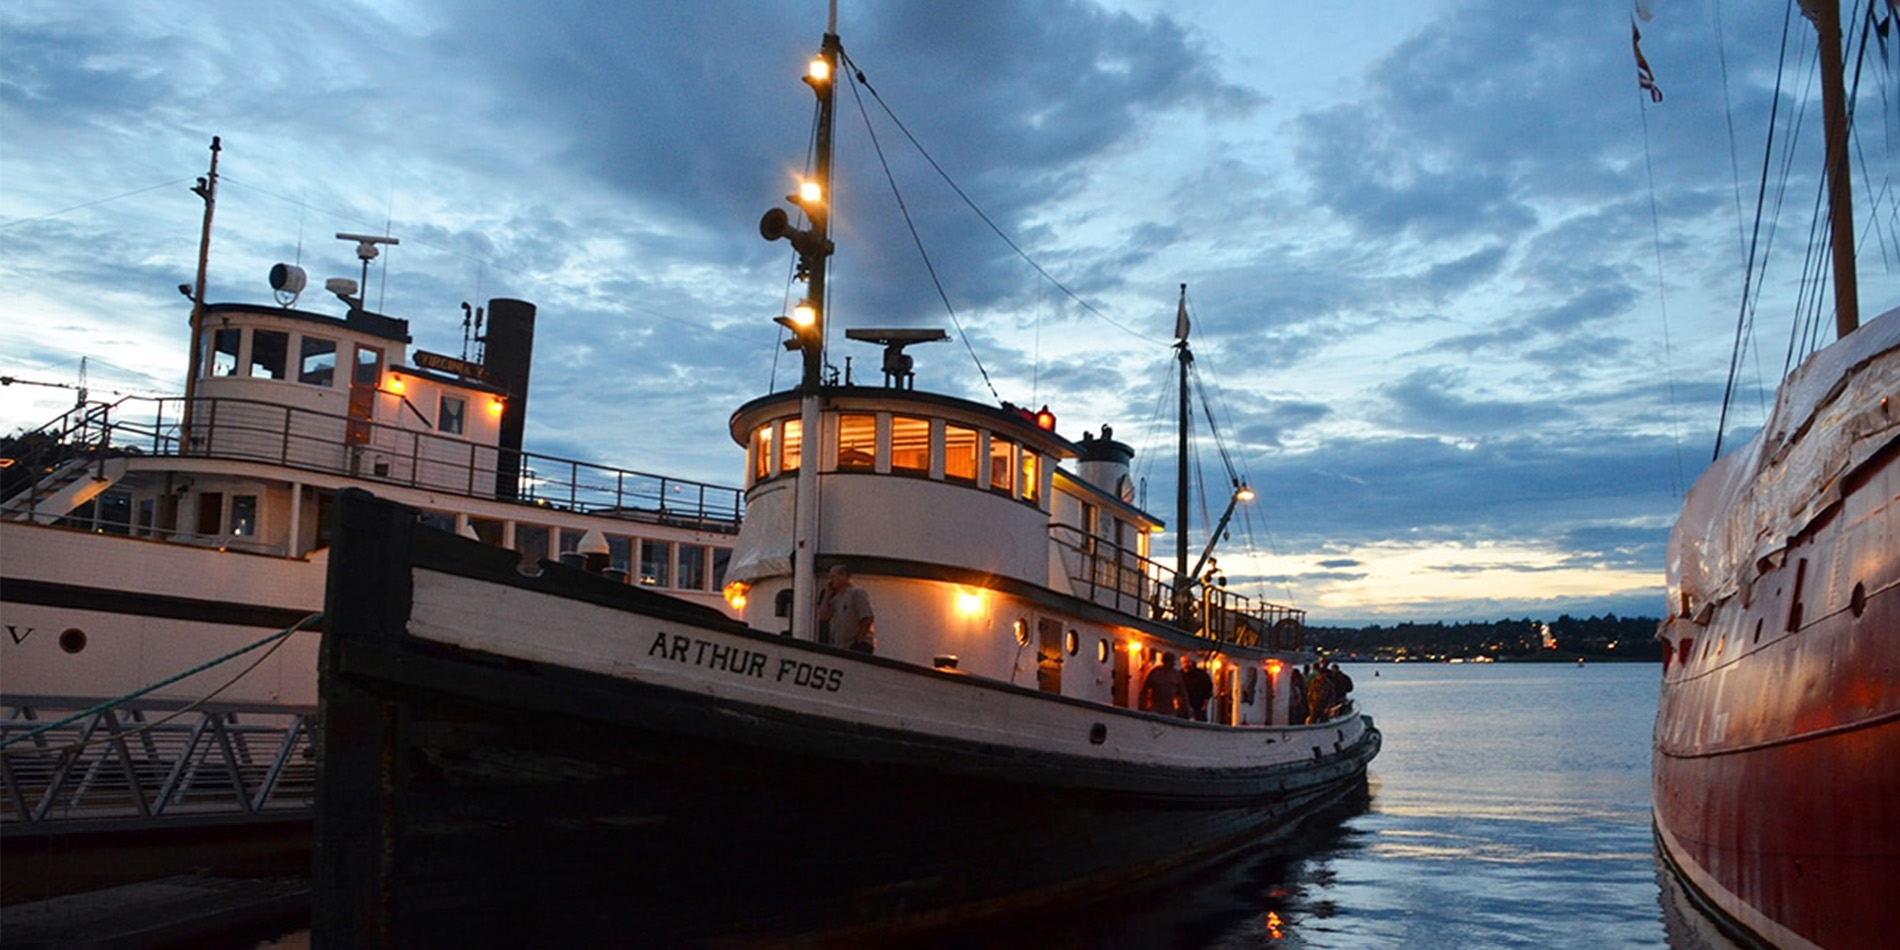 arthur foss boat at dusk